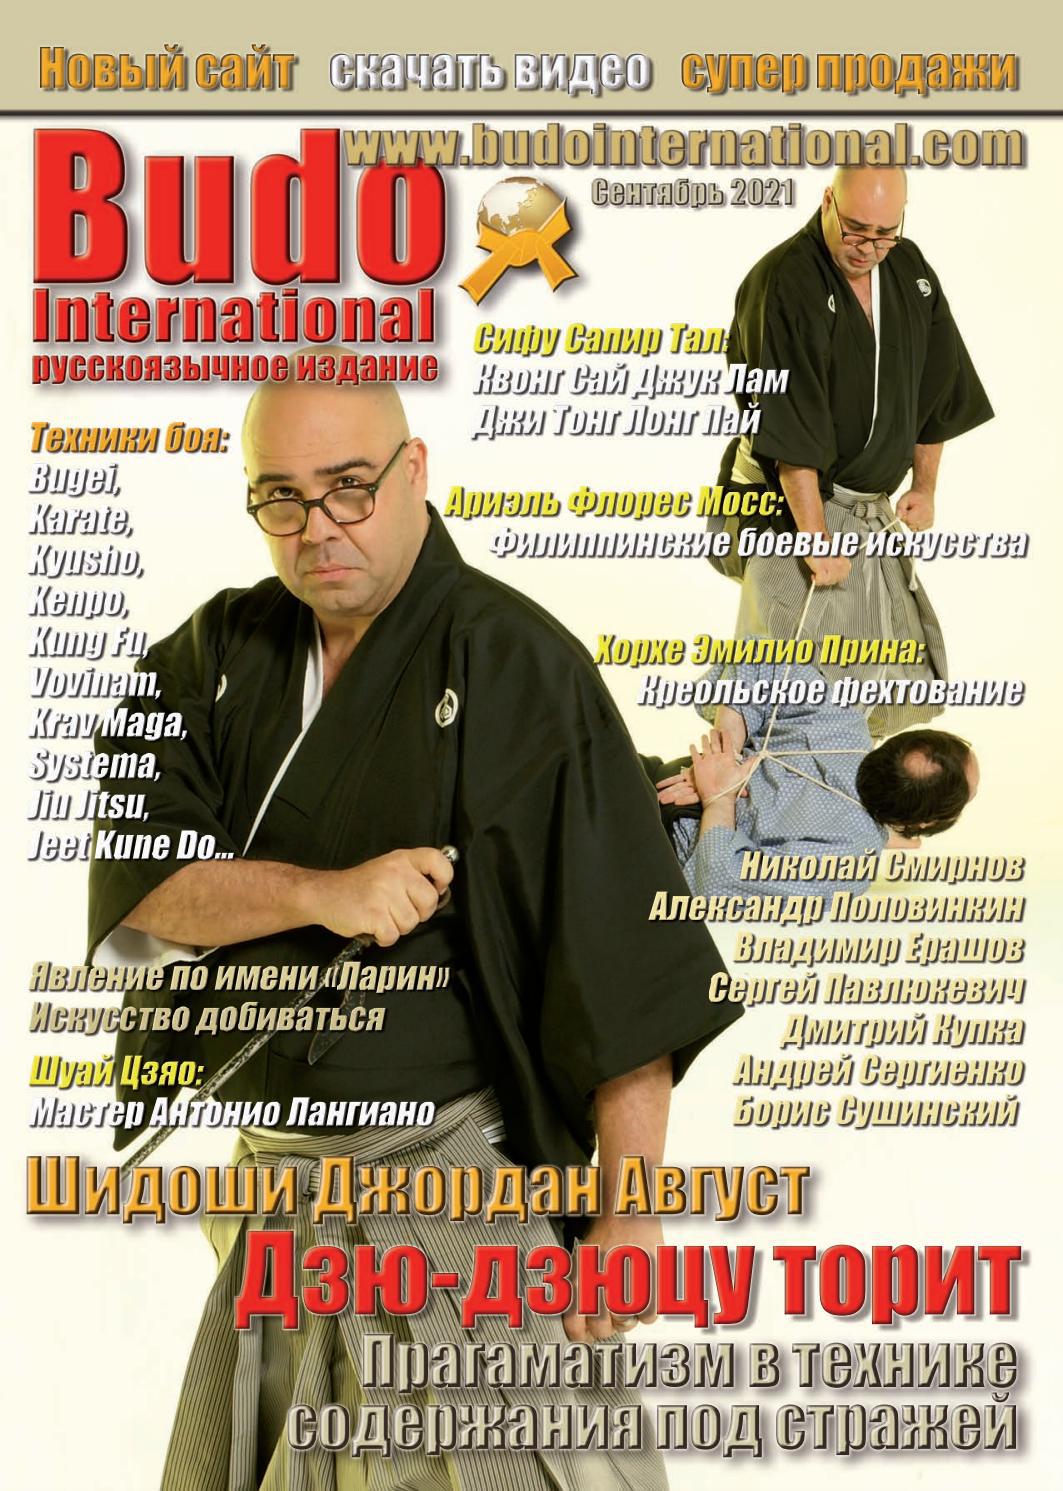 Budo International. Русскоязычное издание, сентябрь 2021